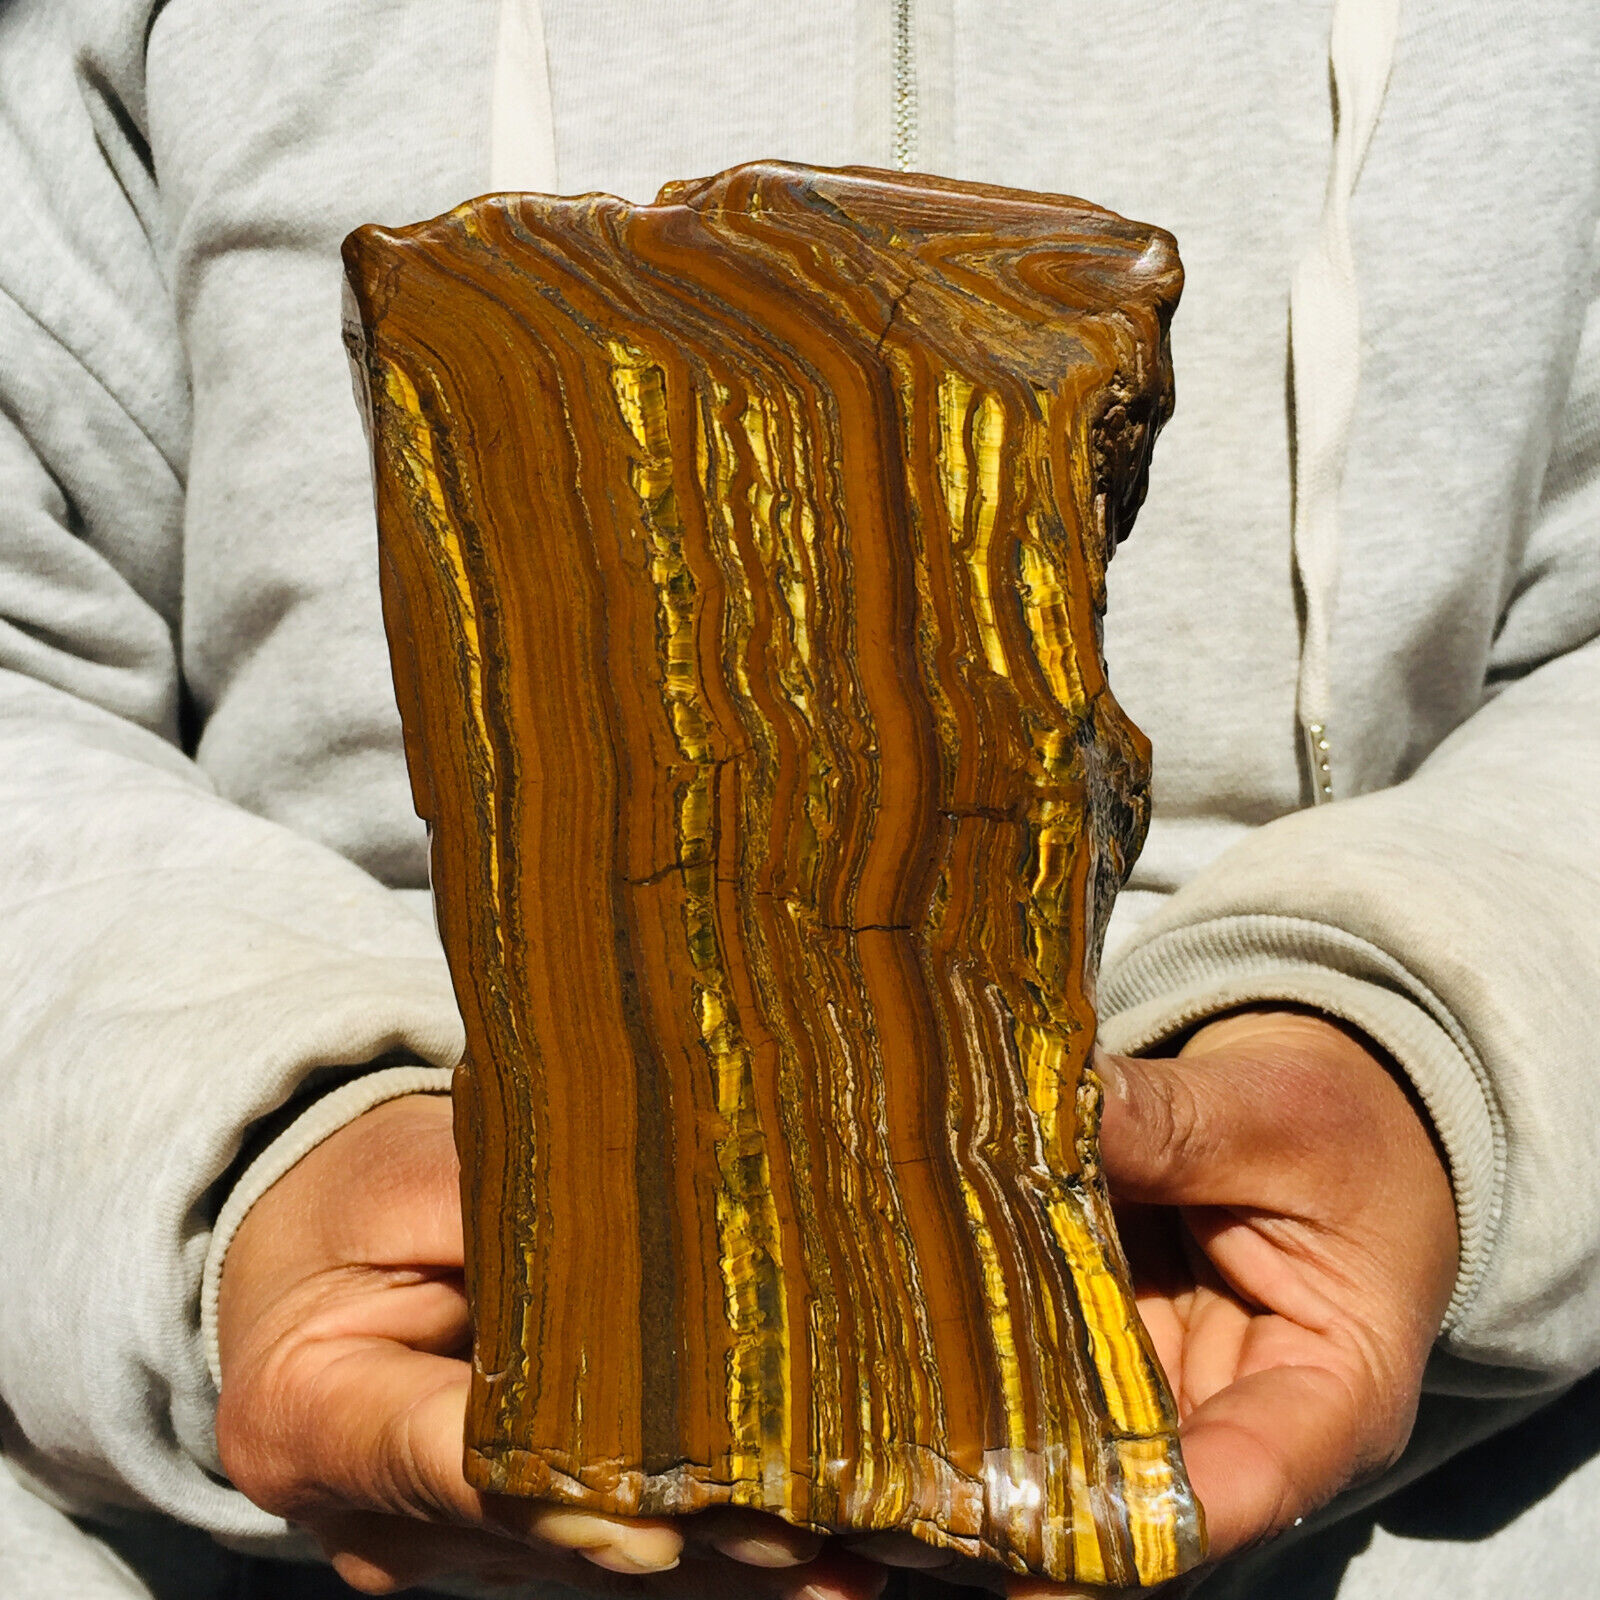 1895g Large Natural Gold Tiger's Eye Quartz Crystal Rough Mineral Specimen Reiki